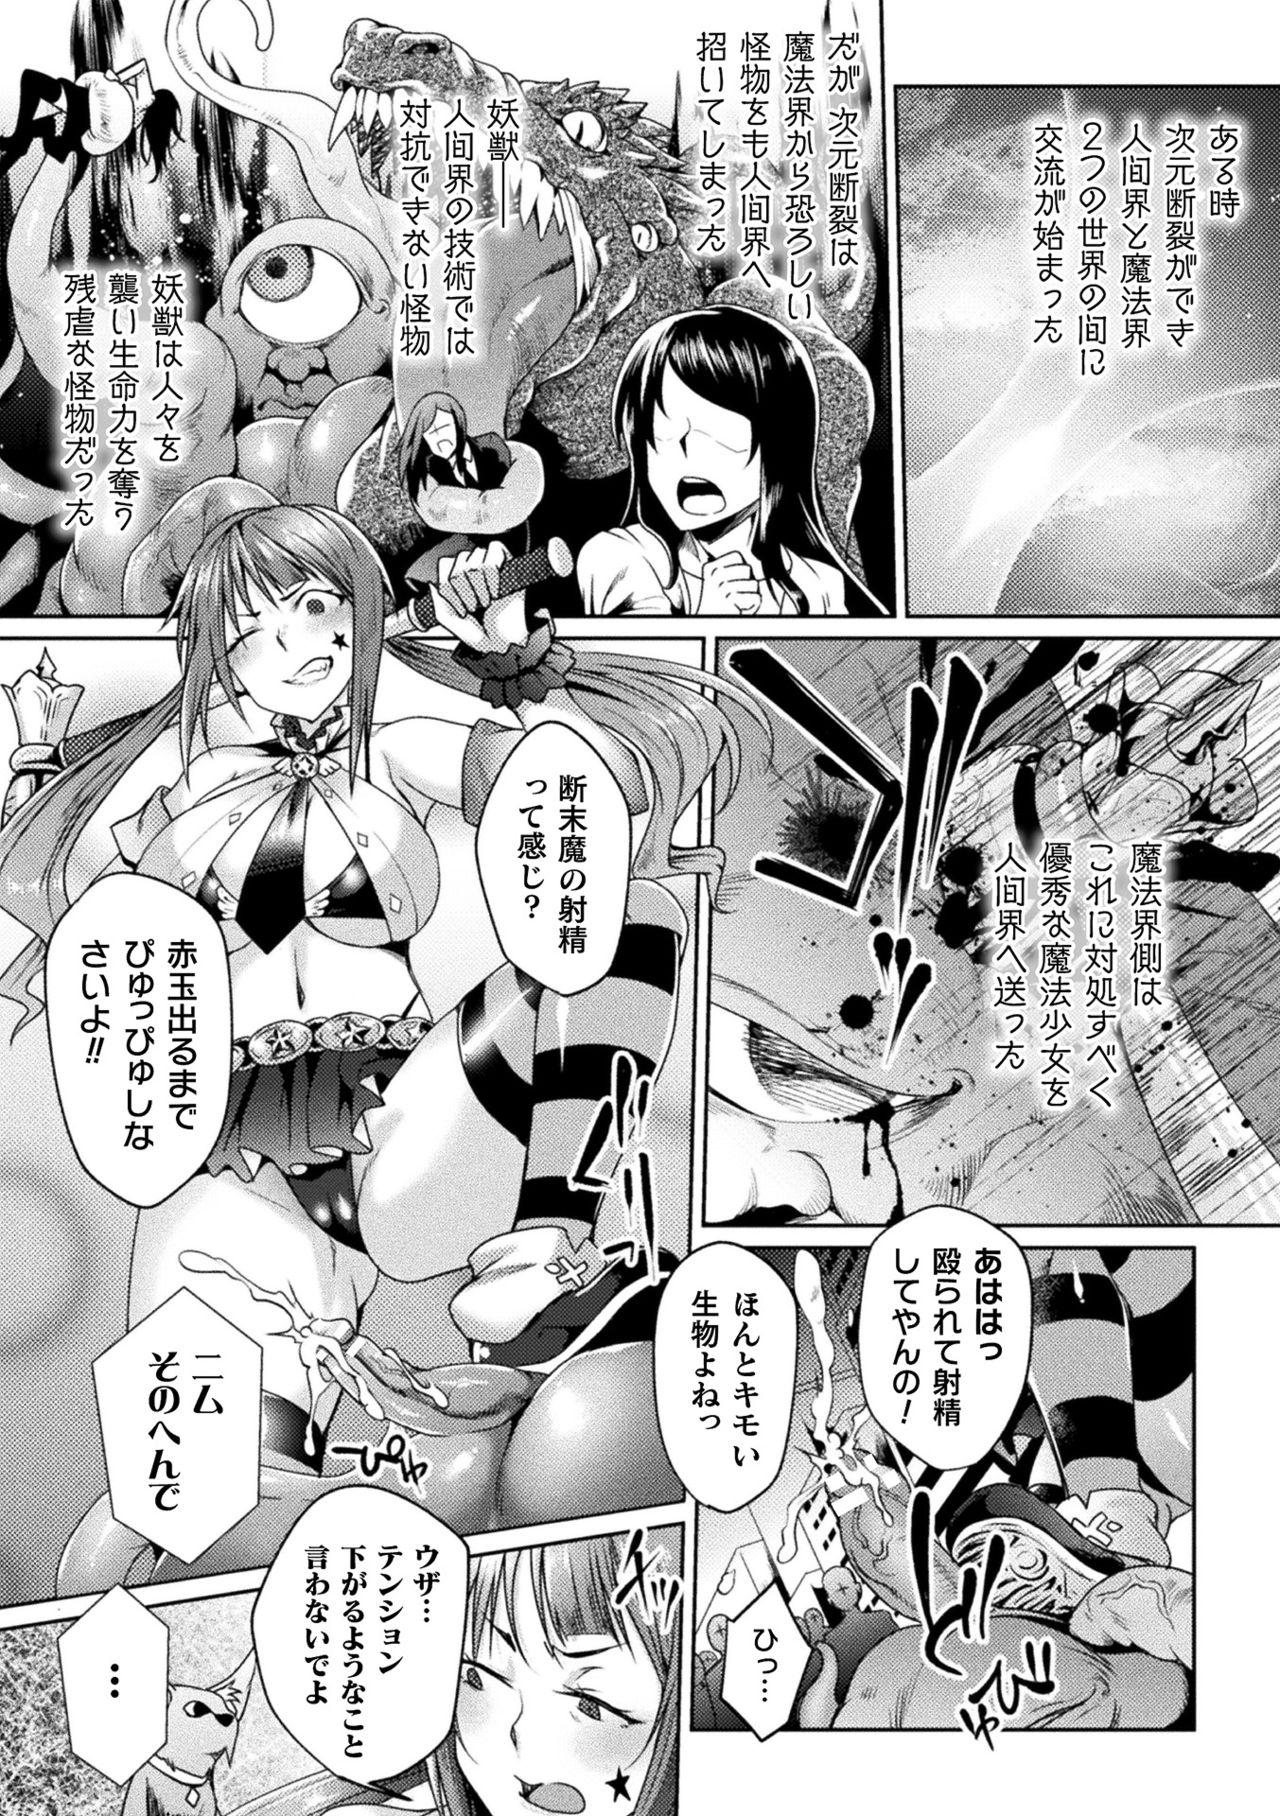 2D Comic Magazine Mesugaki Henshin Heroine Seisai Wakarase-bou ni wa Katemasen deshita! Vol. 1 38